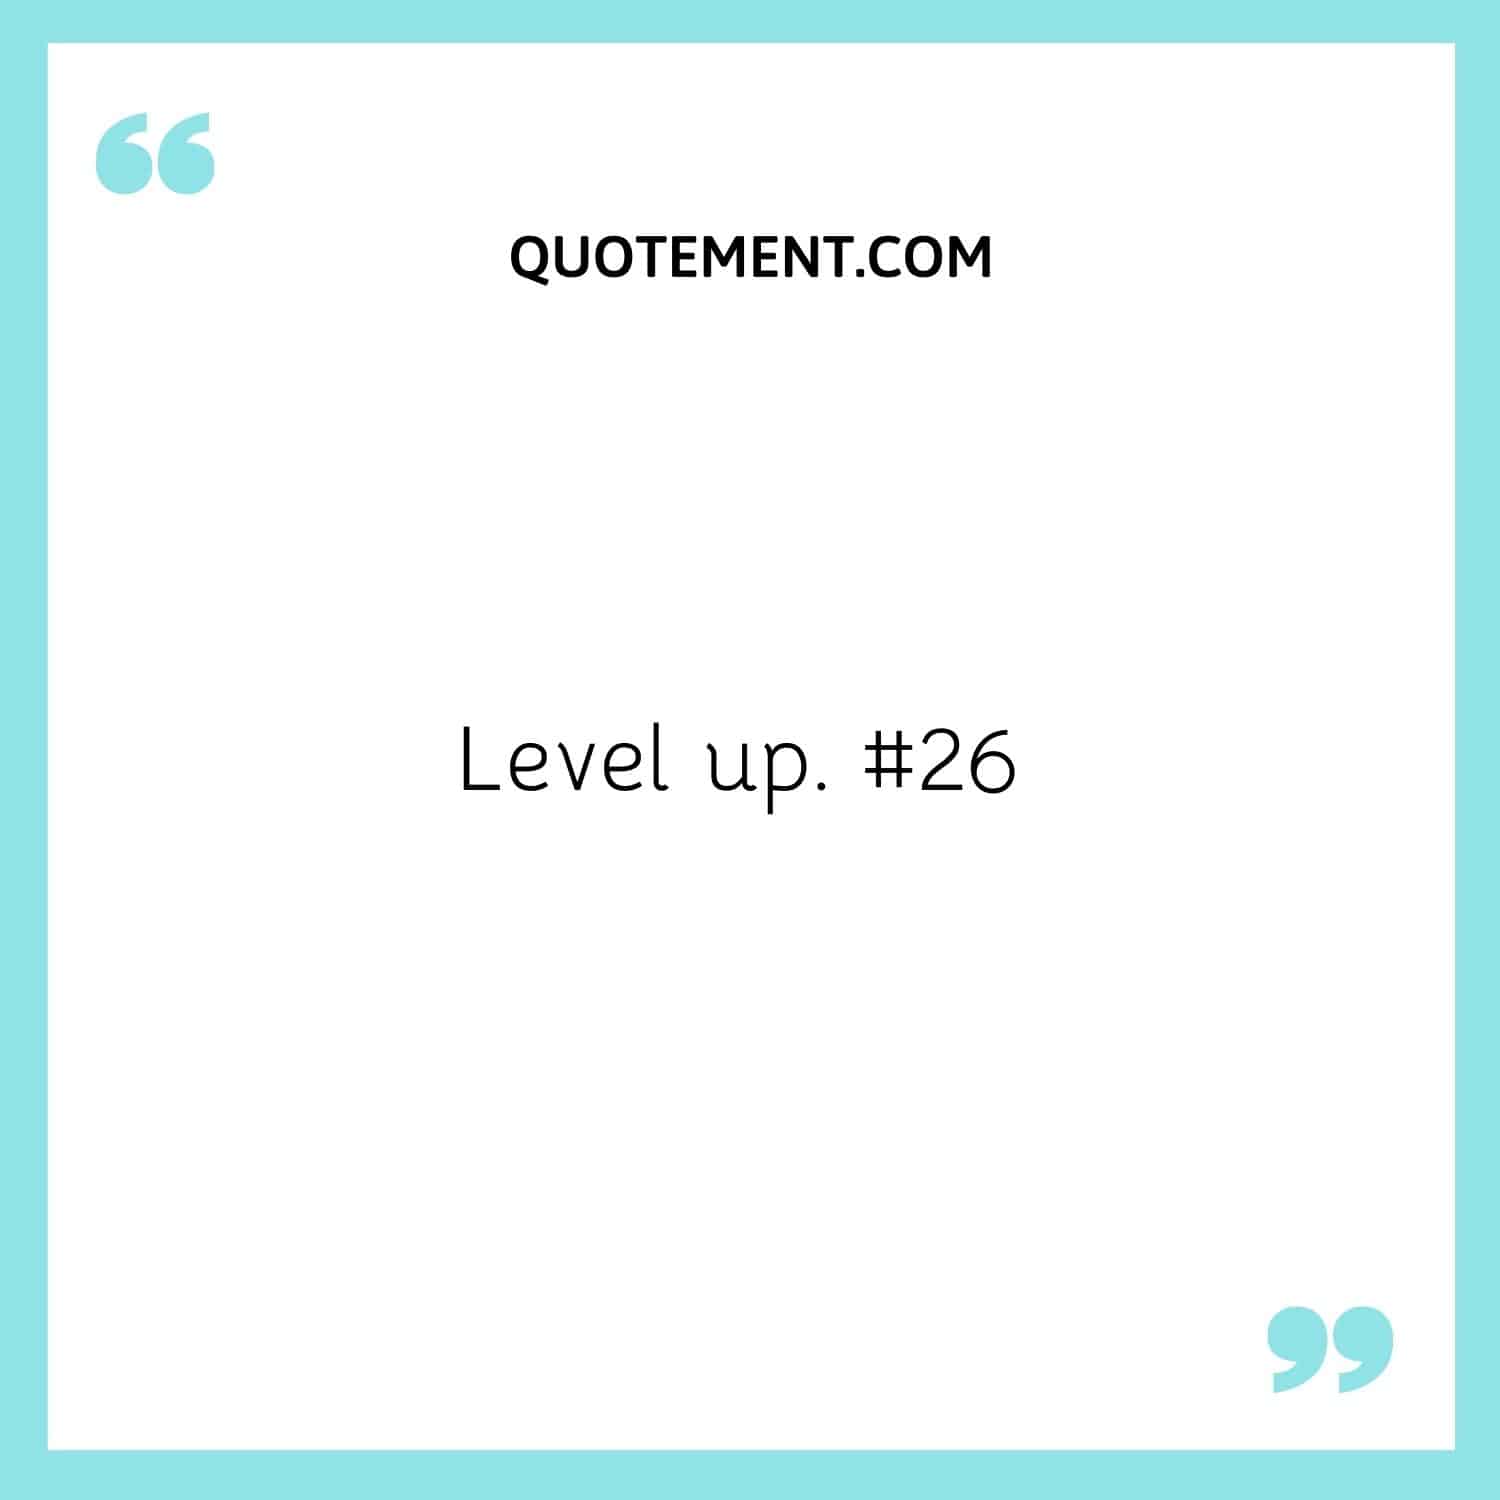 Level up. #26